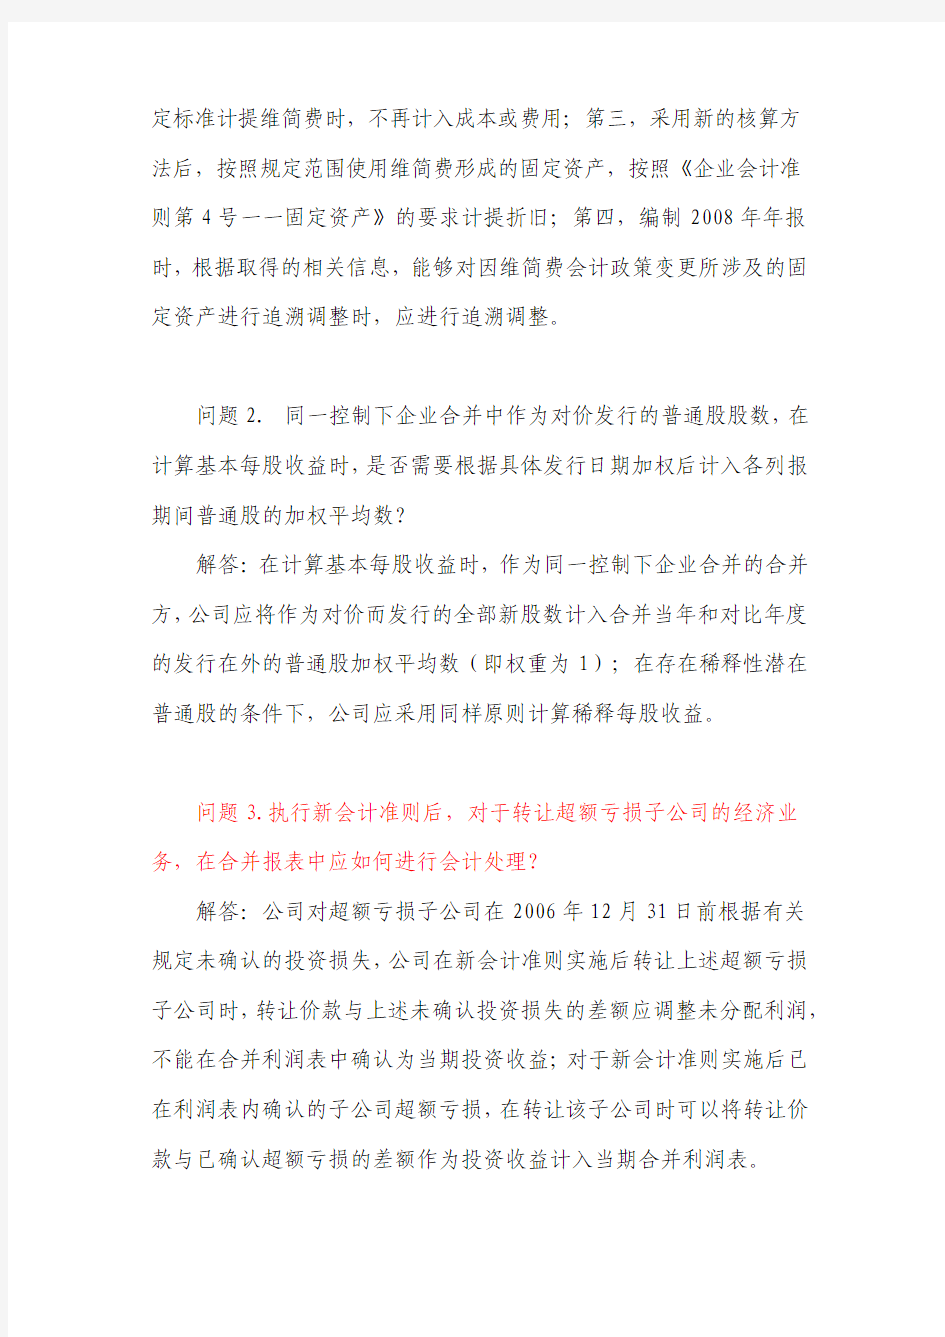 中国证券监督管理委员会会计部函[2009]48号